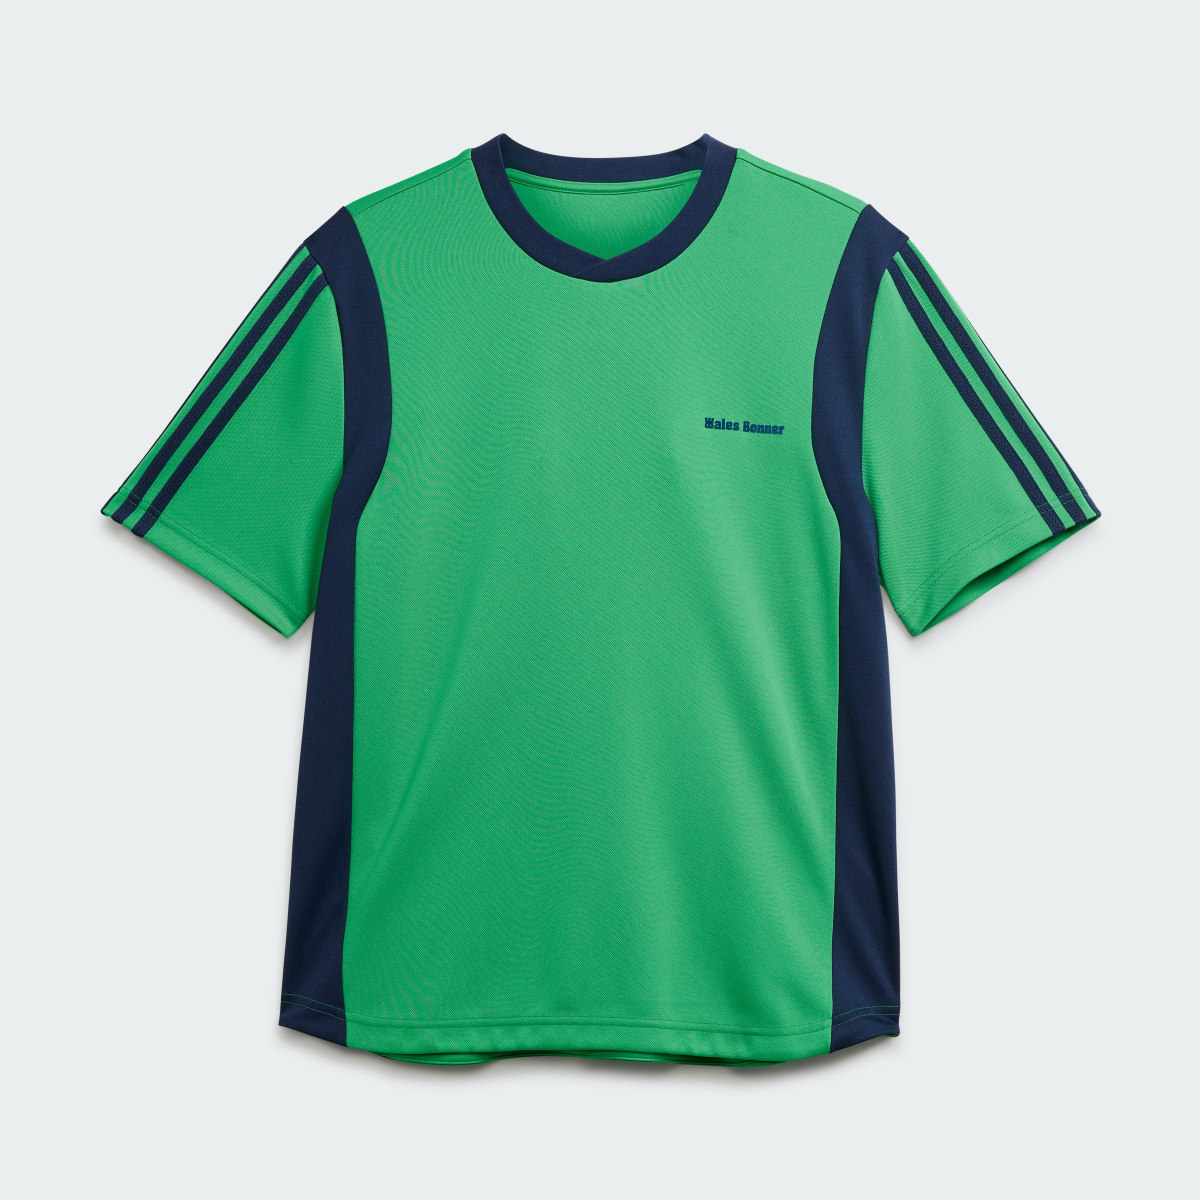 Adidas Wales Bonner Football T-Shirt. 4